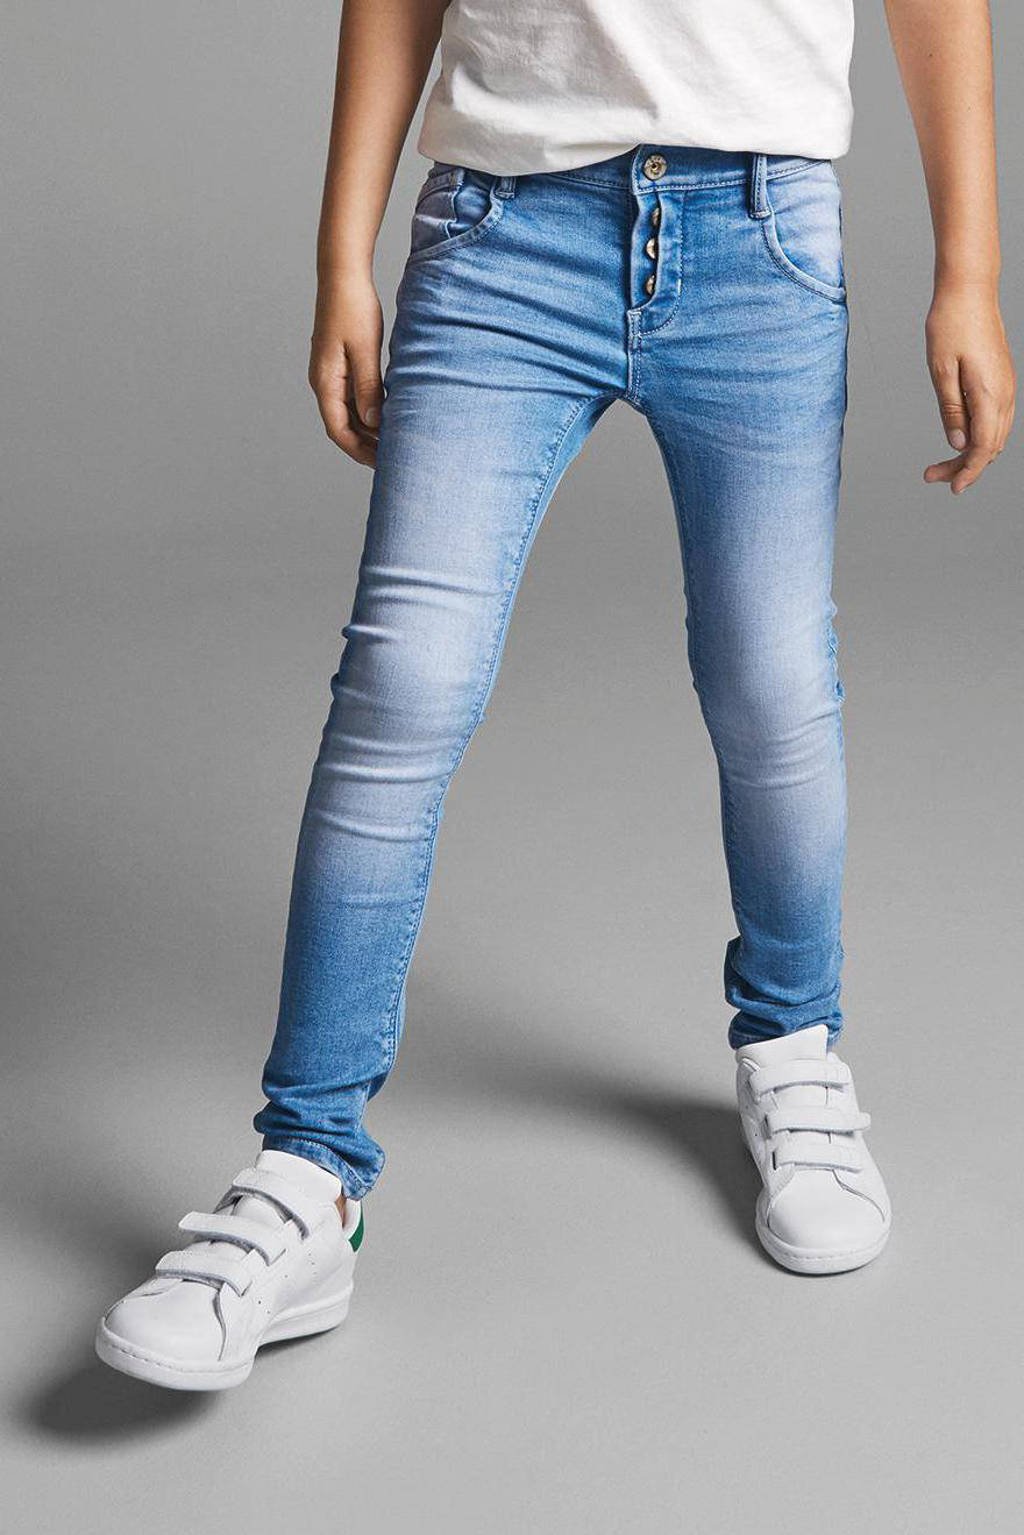 Hesje Hoelahoep verband NAME IT KIDS X-slim fit jeans | wehkamp